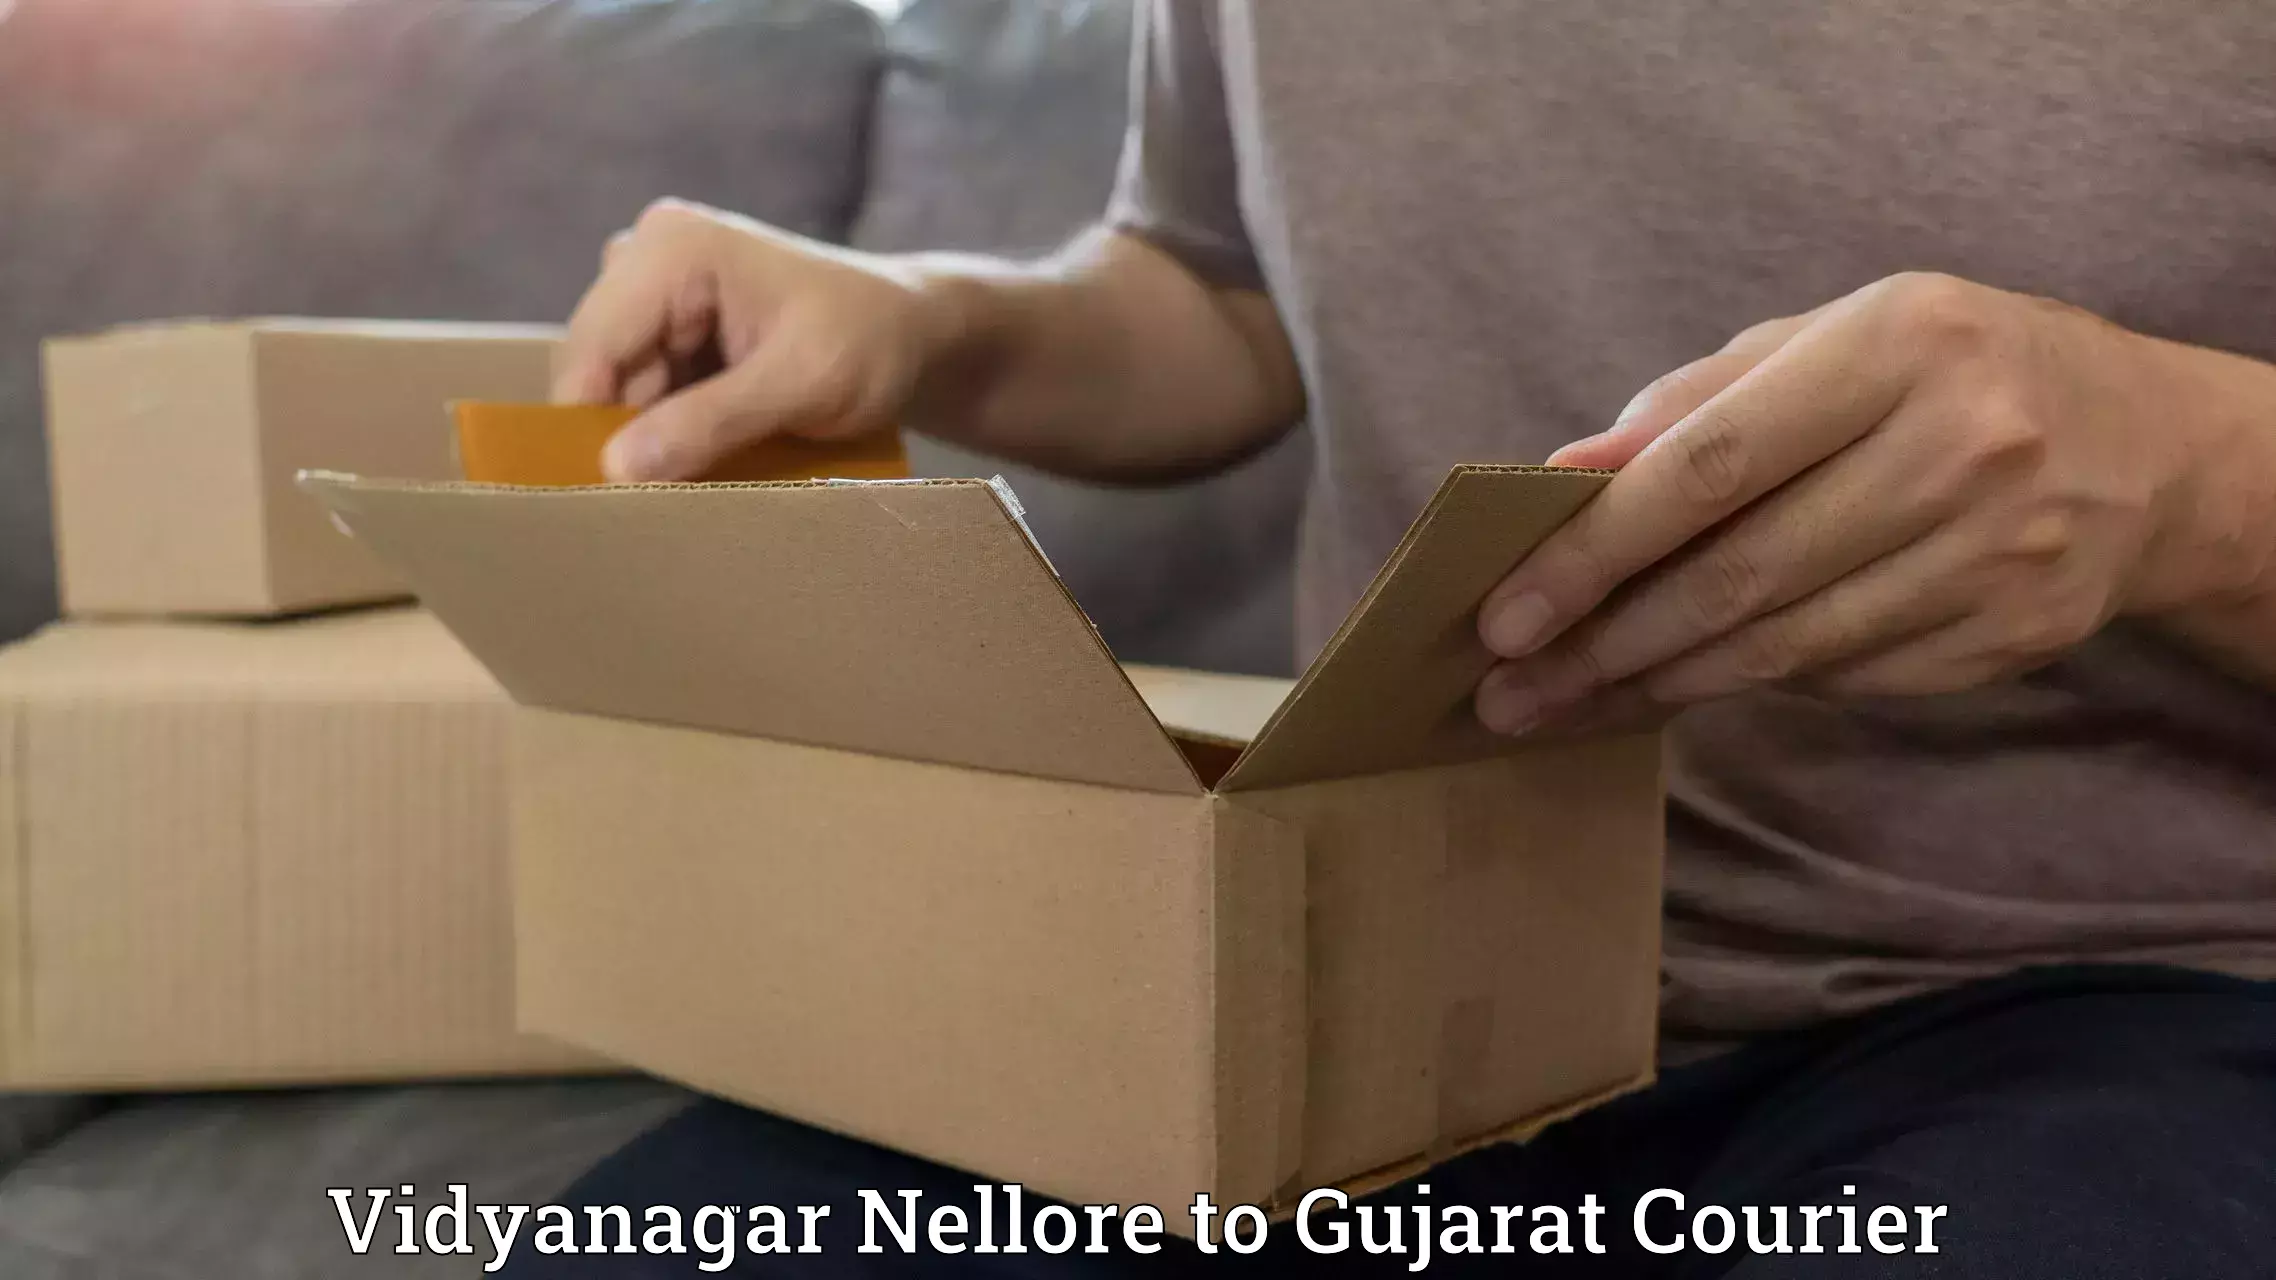 International courier networks Vidyanagar Nellore to IIT Gandhi Nagar